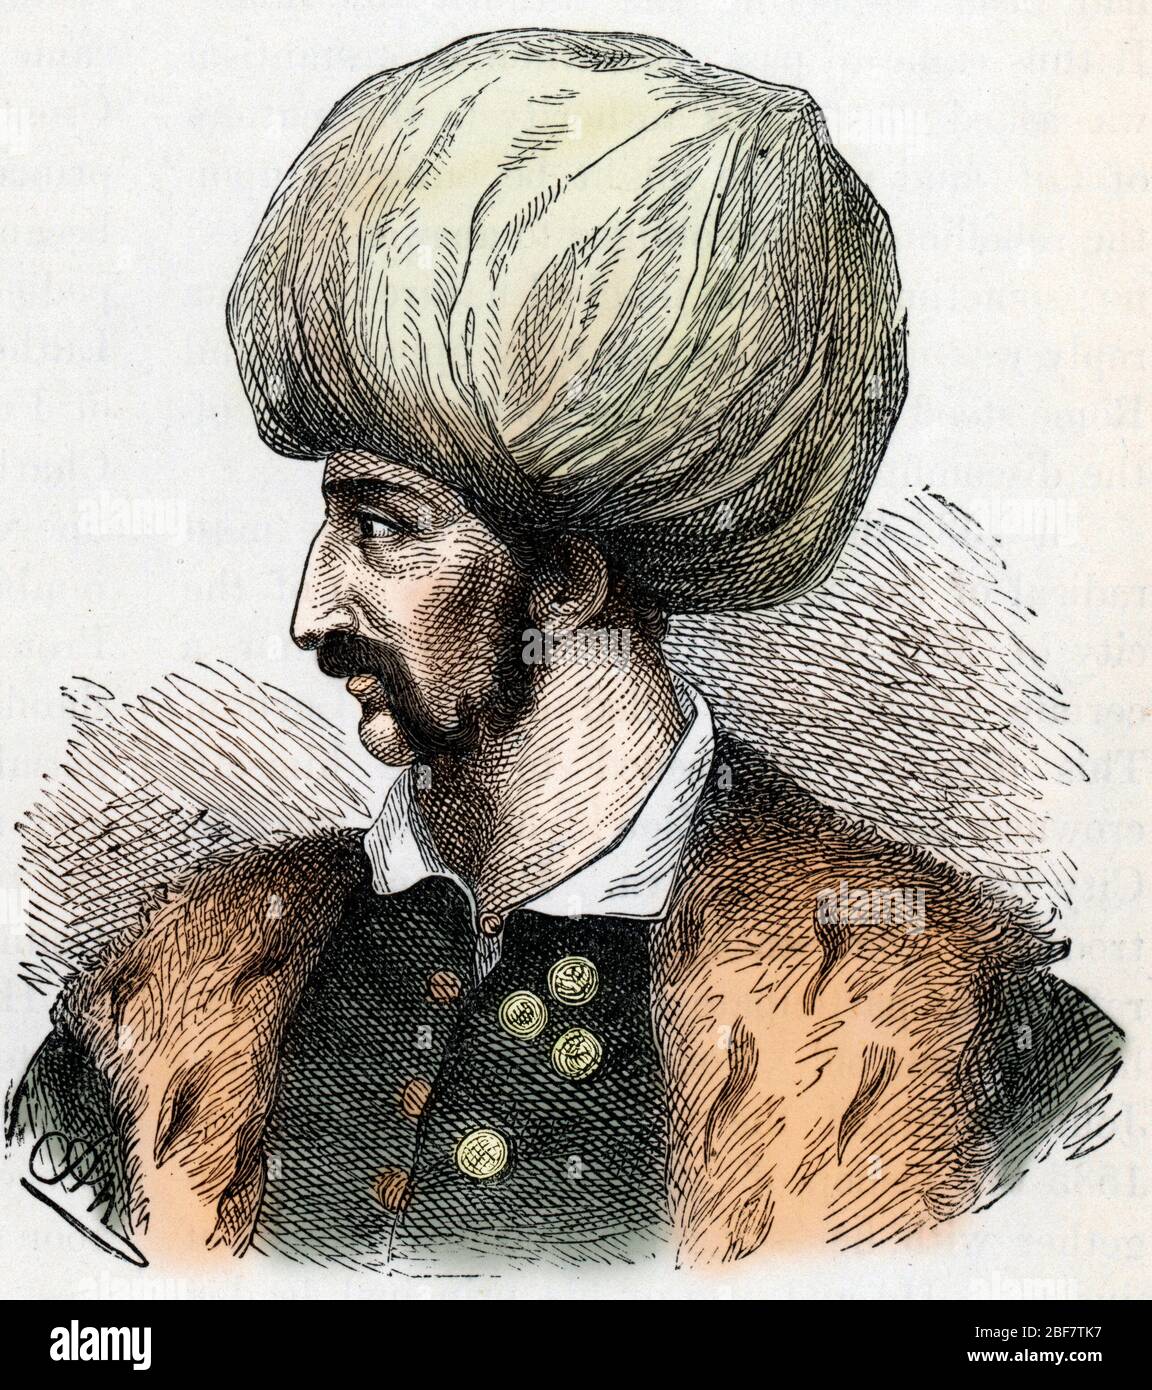 Portrait du sultan ottoman Soliman II (1642-1691) (Suleiman II sultan of ottoman empire) Gravure tiree de 'History of the world' de Ridpath 1885 Colle Stock Photo